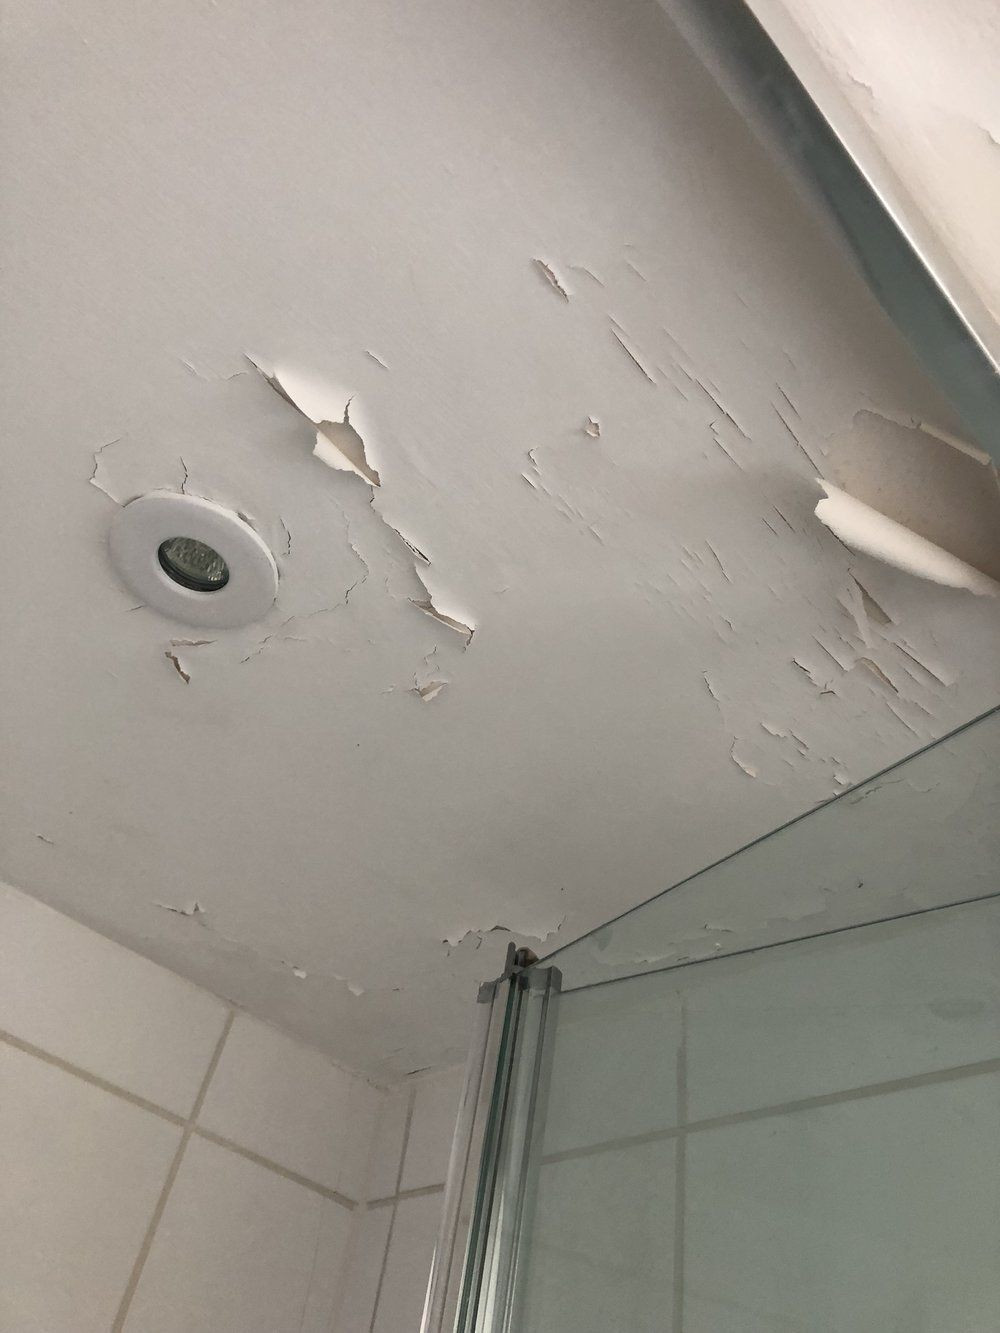 Bathroom Ceiling Paint Peeling
 How To Repair A Peeling Bathroom Wall Ceiling in 2020